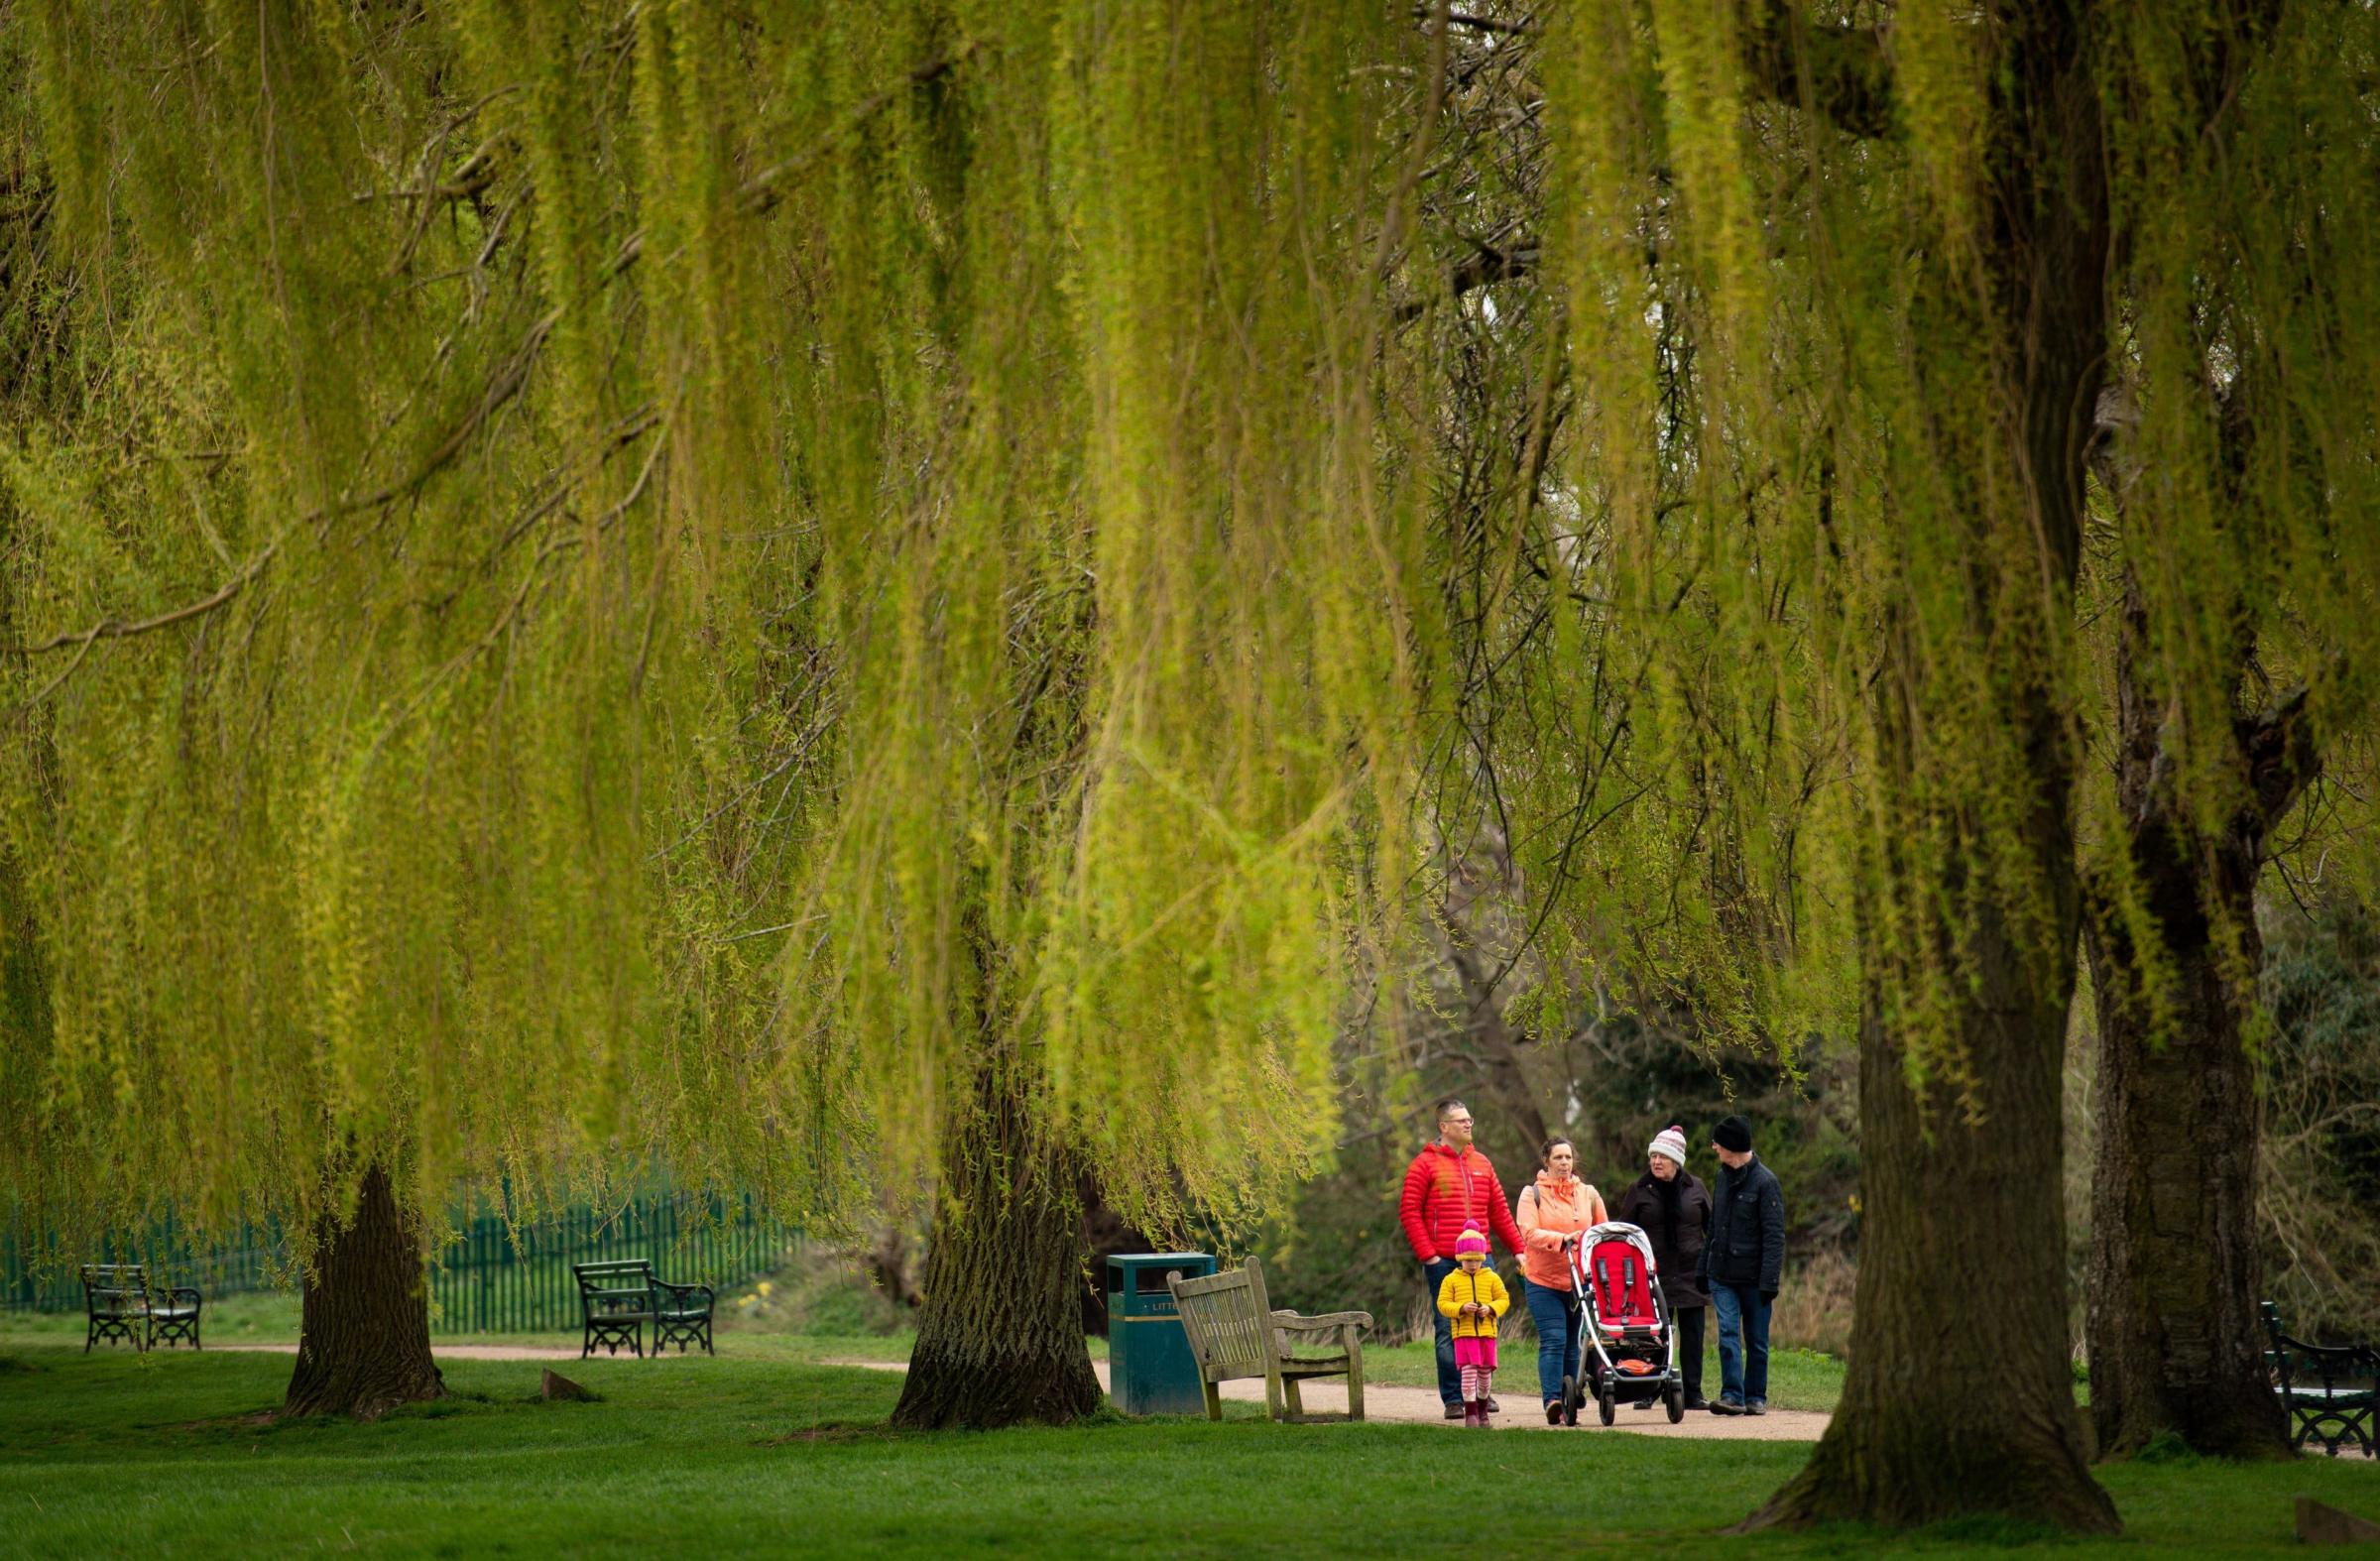 A family walks in St Nicholas Park in Warwick, enjoying the warmer weather earlier in the week